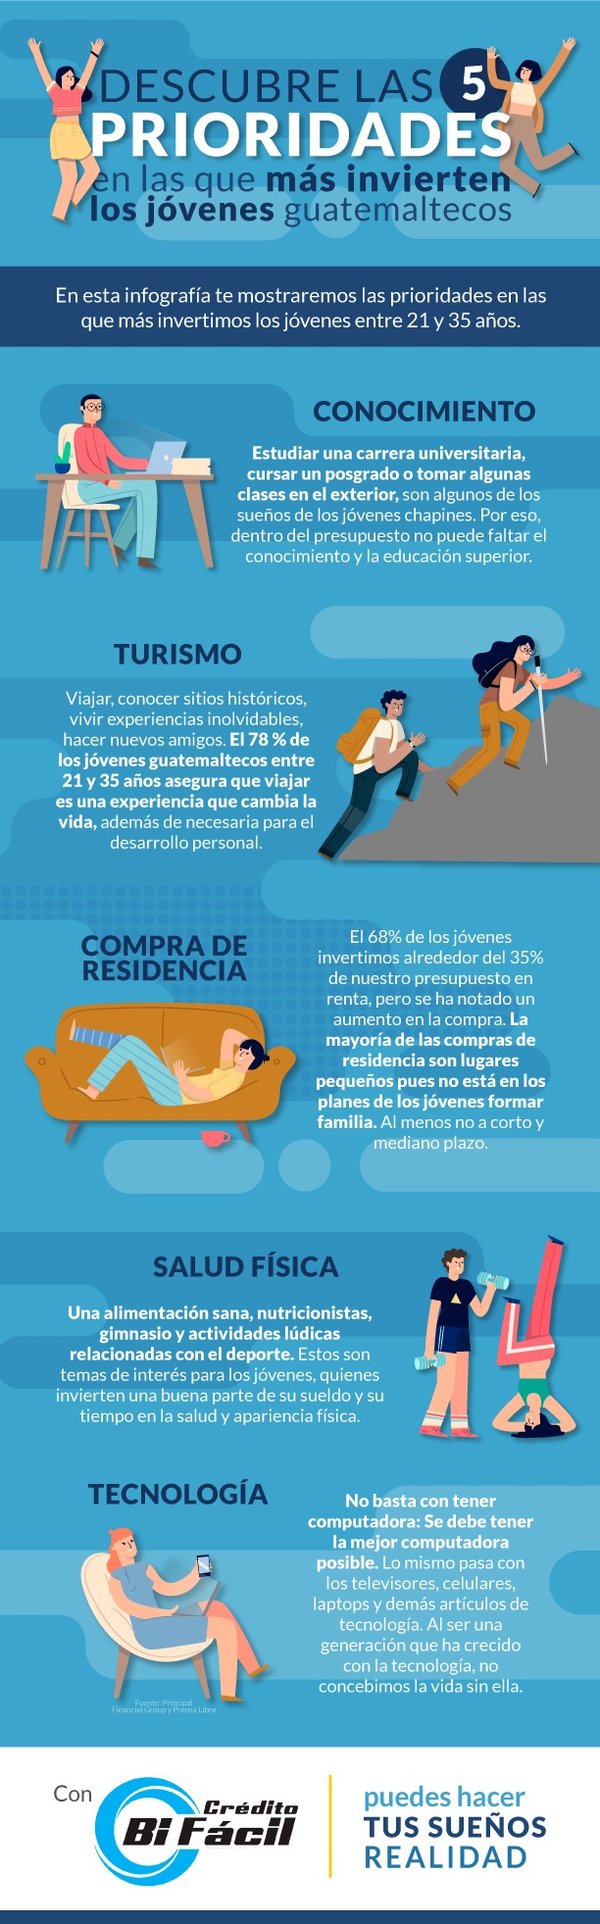 Infografía Descubre las 5 prioridades en las que más invierten los jóvenes guatemaltecos